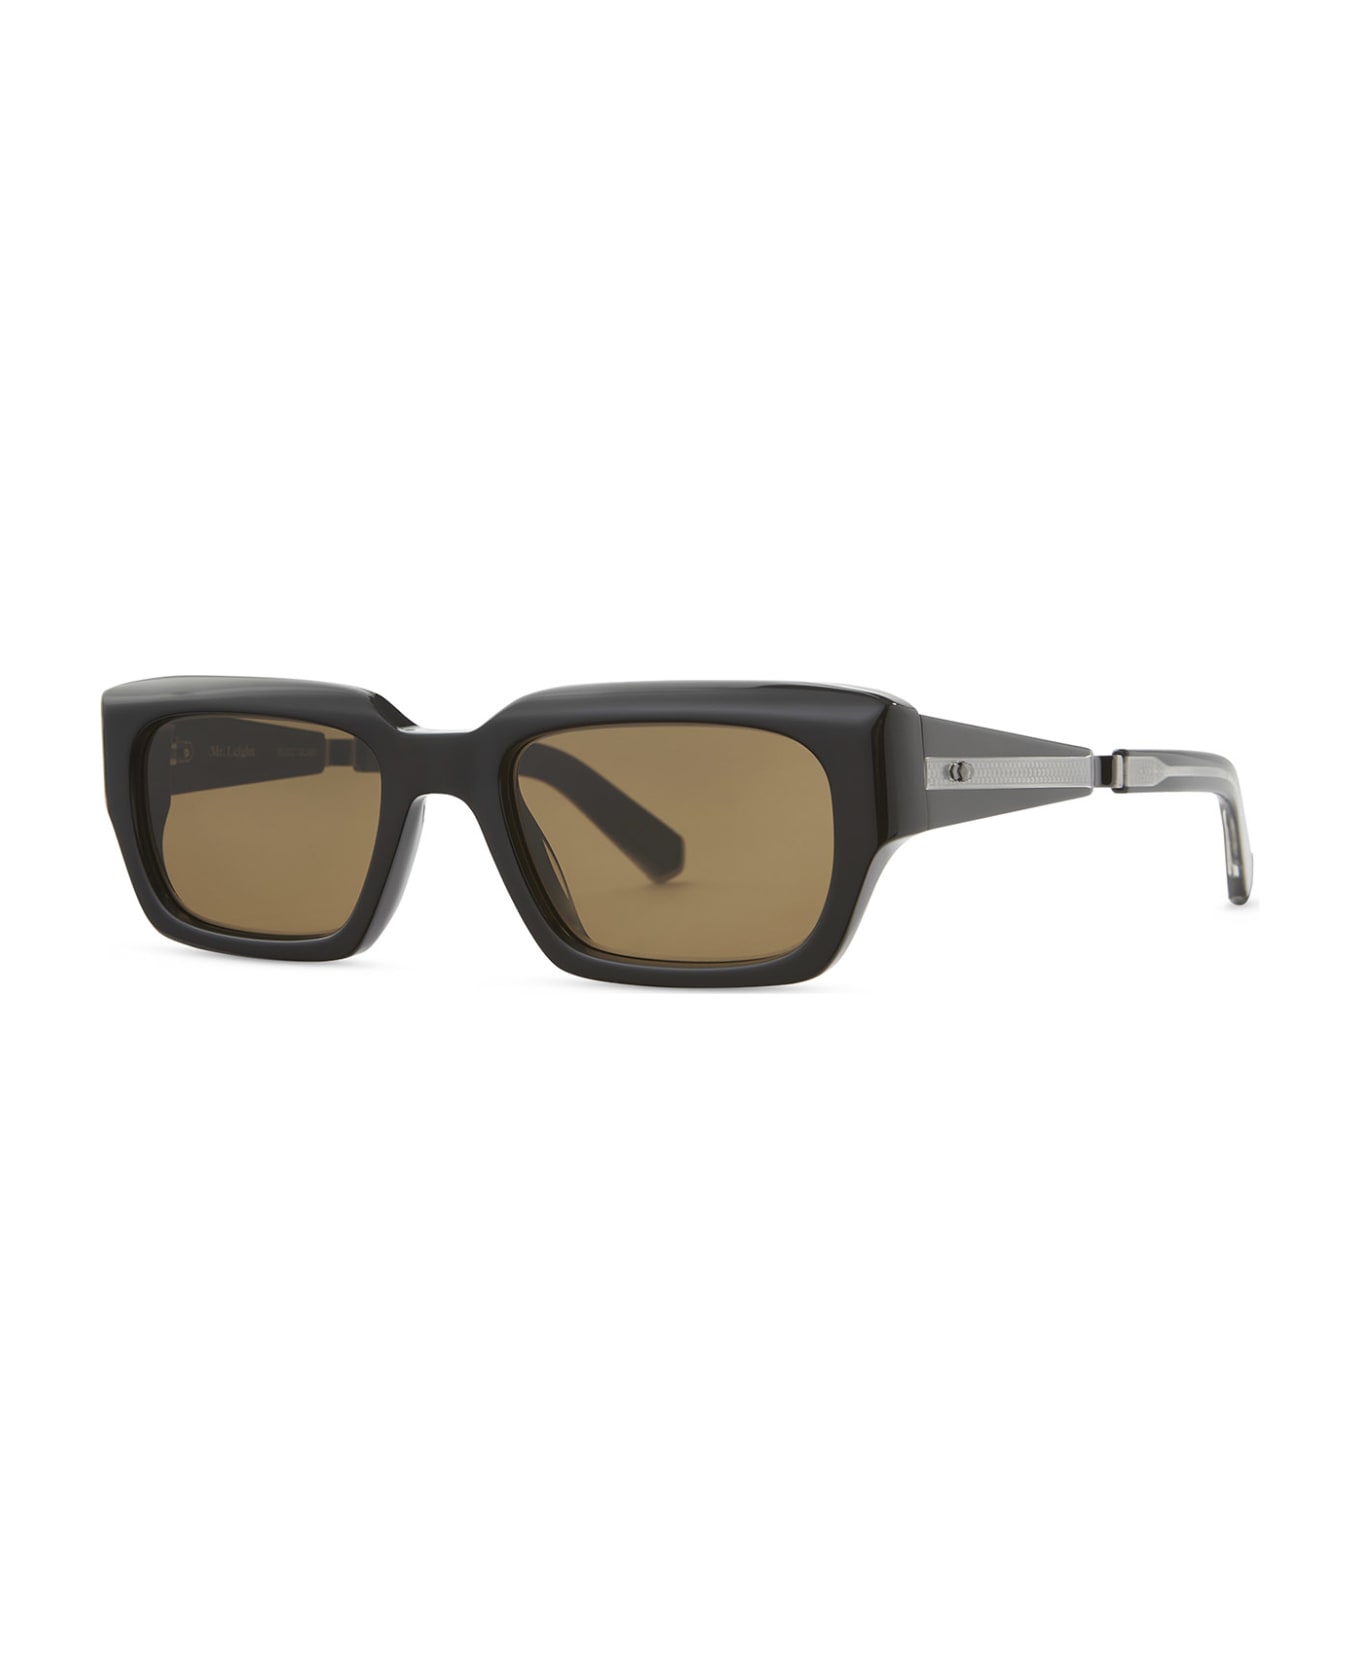 Mr. Leight Maverick S Black-pewter Sunglasses -  Black-Pewter サングラス